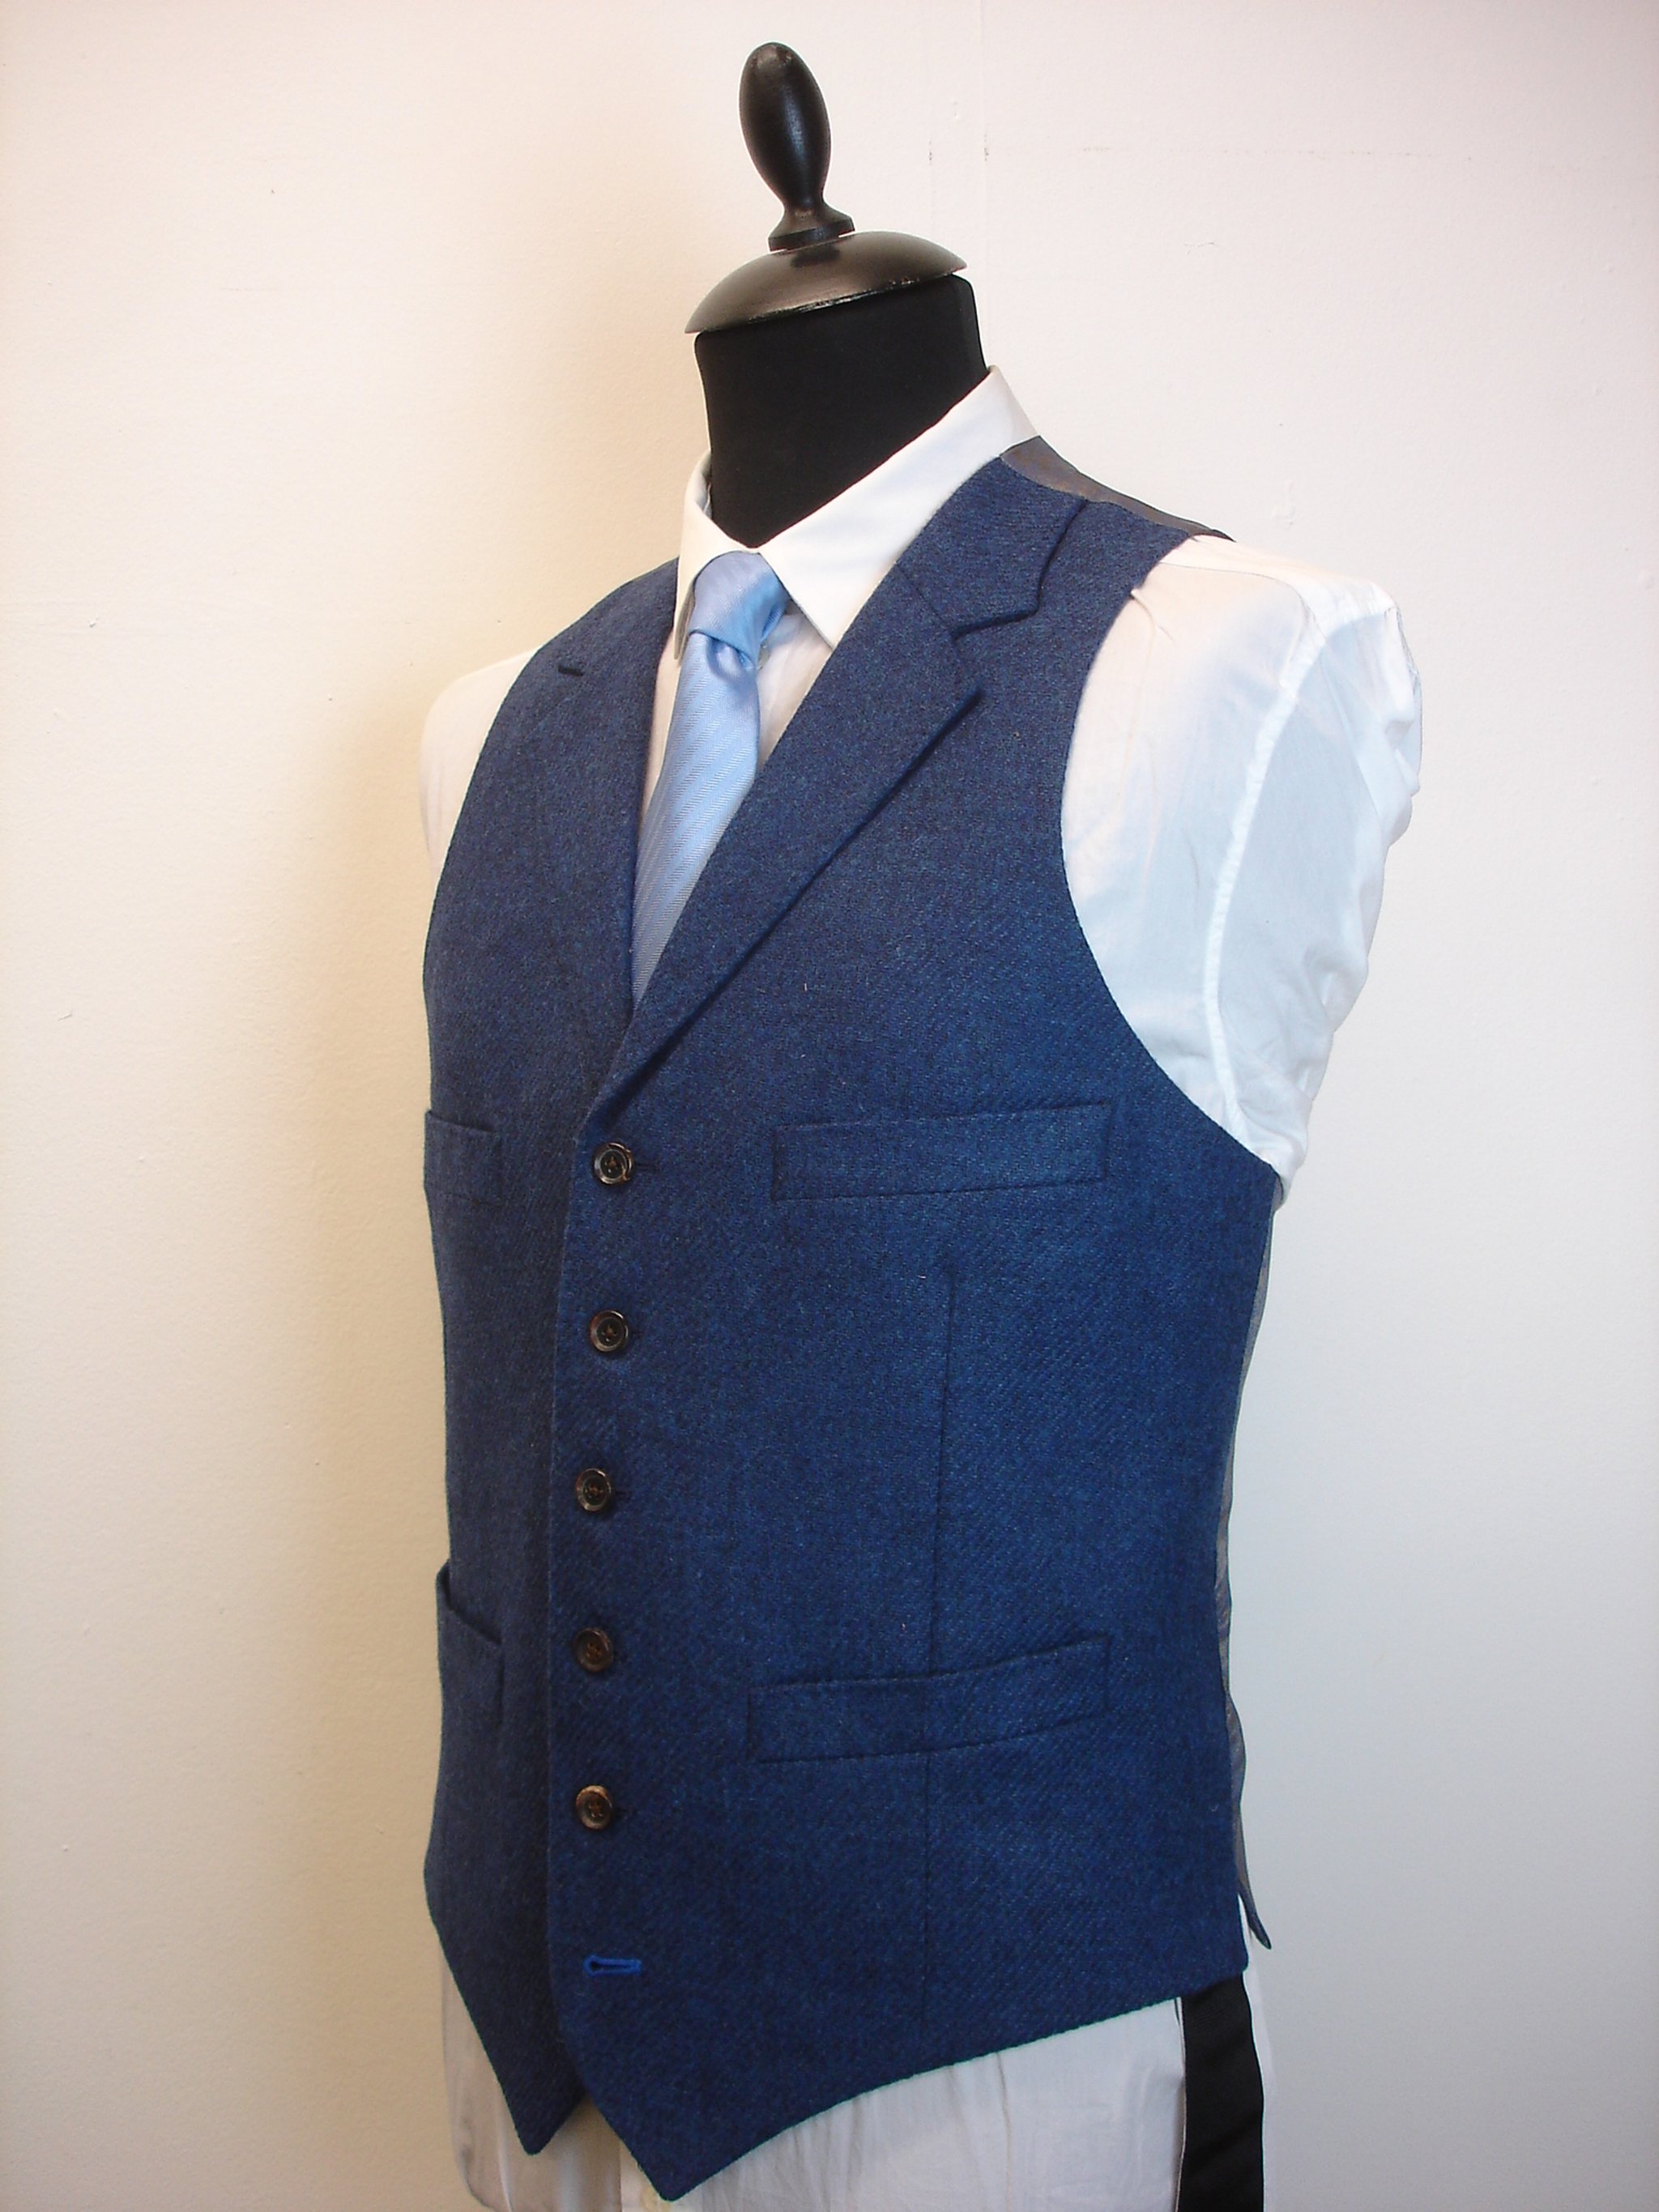 3 Piece Suit in Holland & SHerry Shetland Tweed (4).JPG